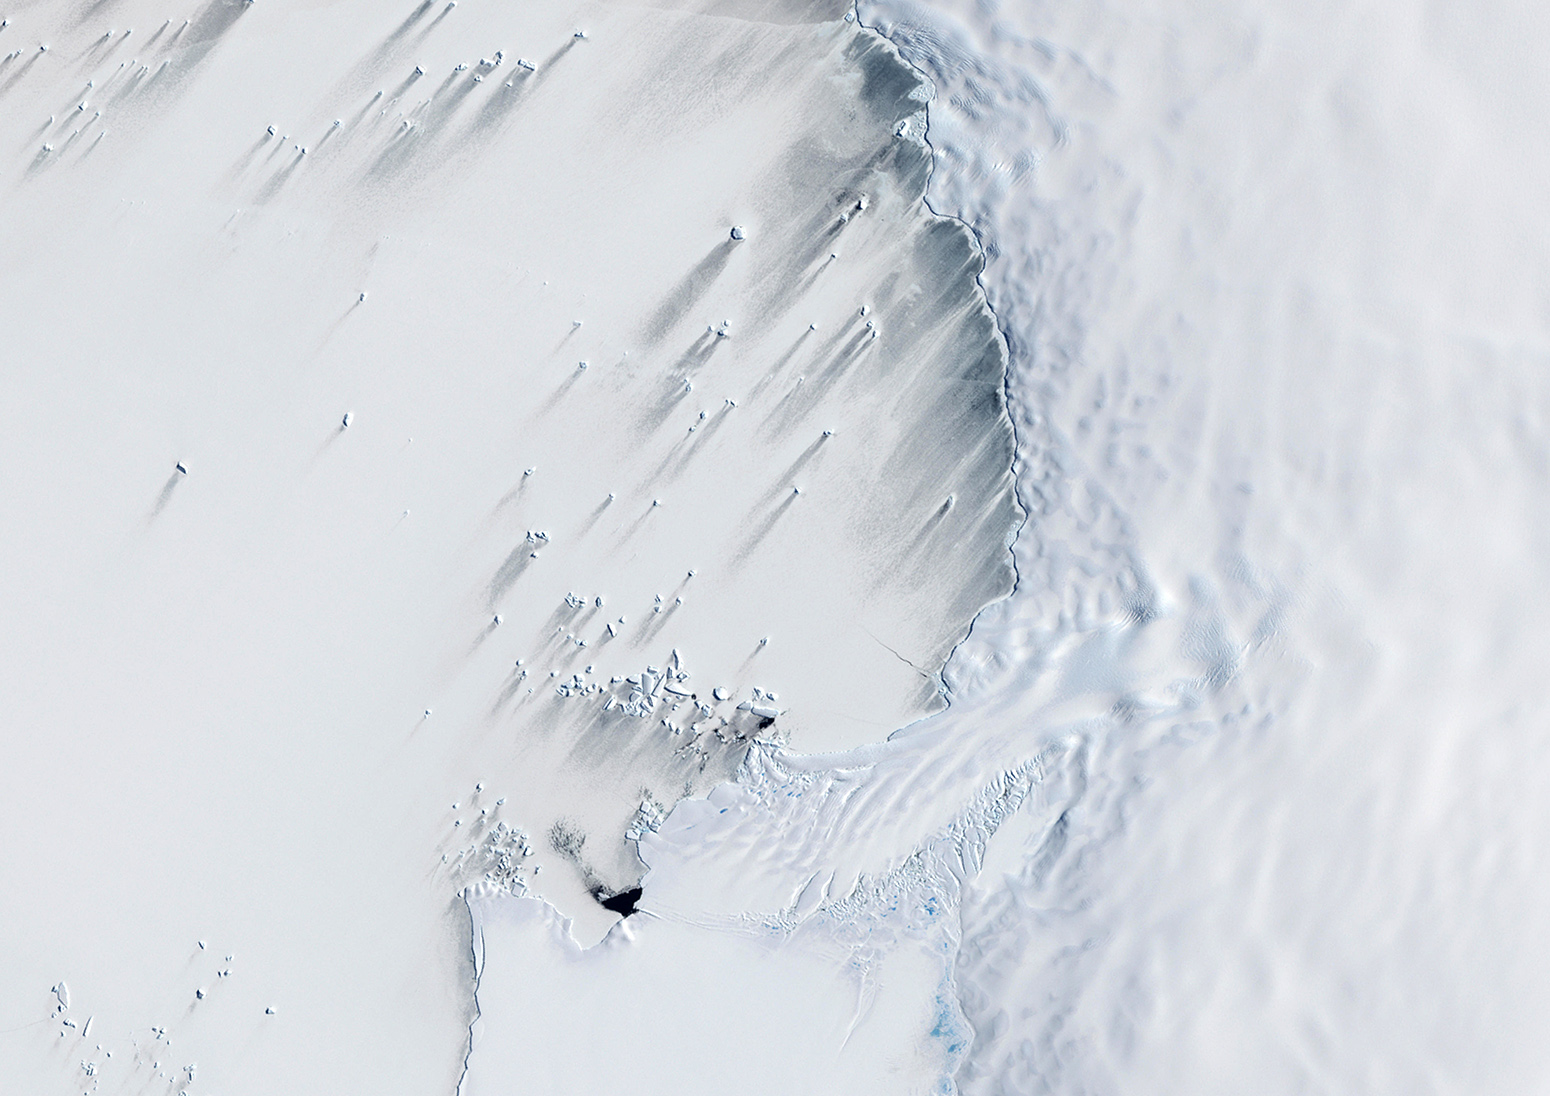 南极西部松岛湾上空的鸟瞰图。来源:环球影像集团北美有限责任公司/阿拉米股票图。E4DW38